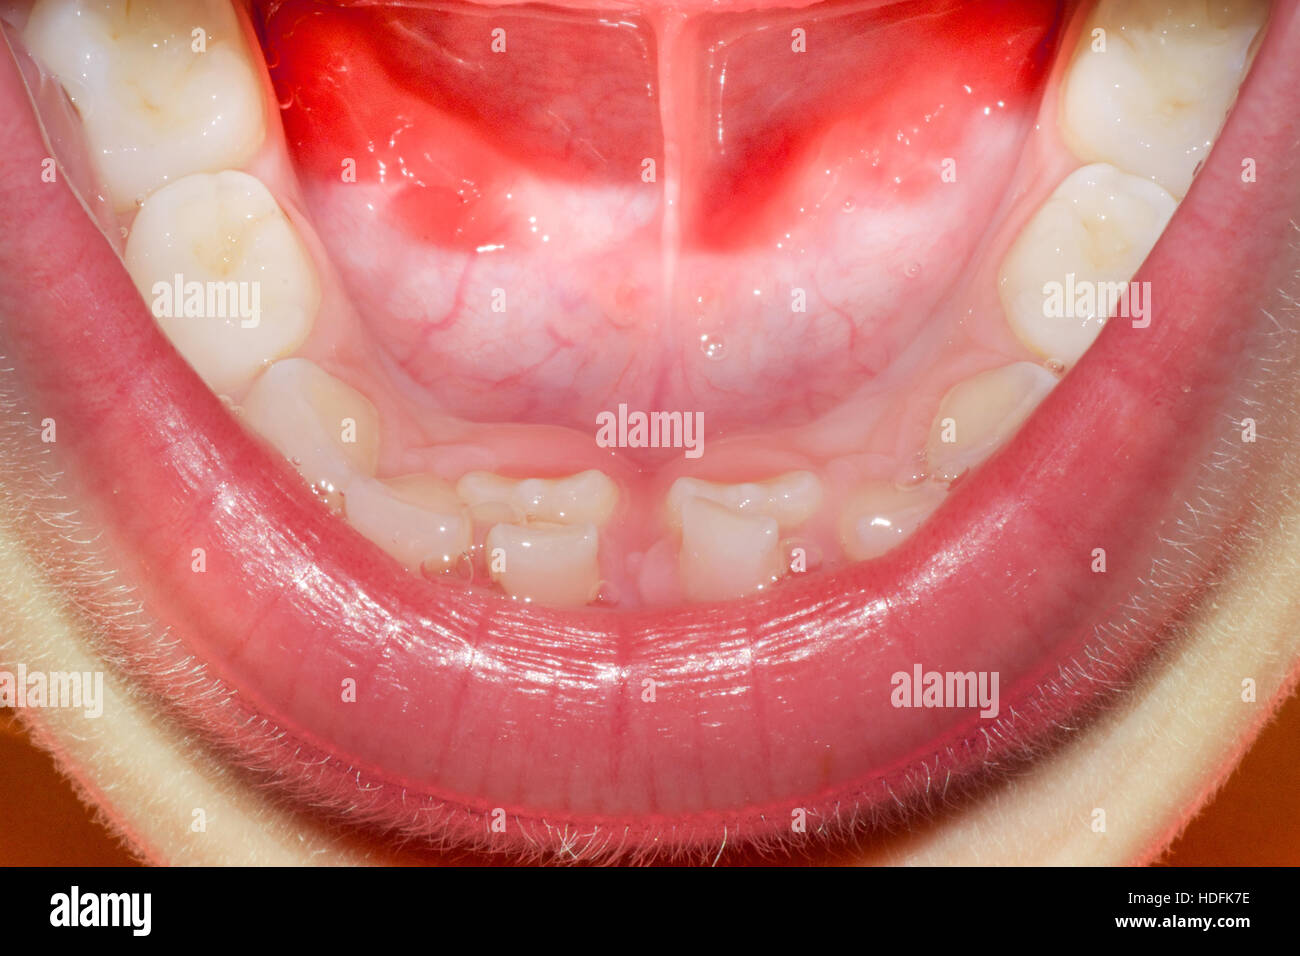 den Mund mit Baby und Erwachsene Zähne am unteren Schneidezähne nennt dies Haifischzähne Stockfoto